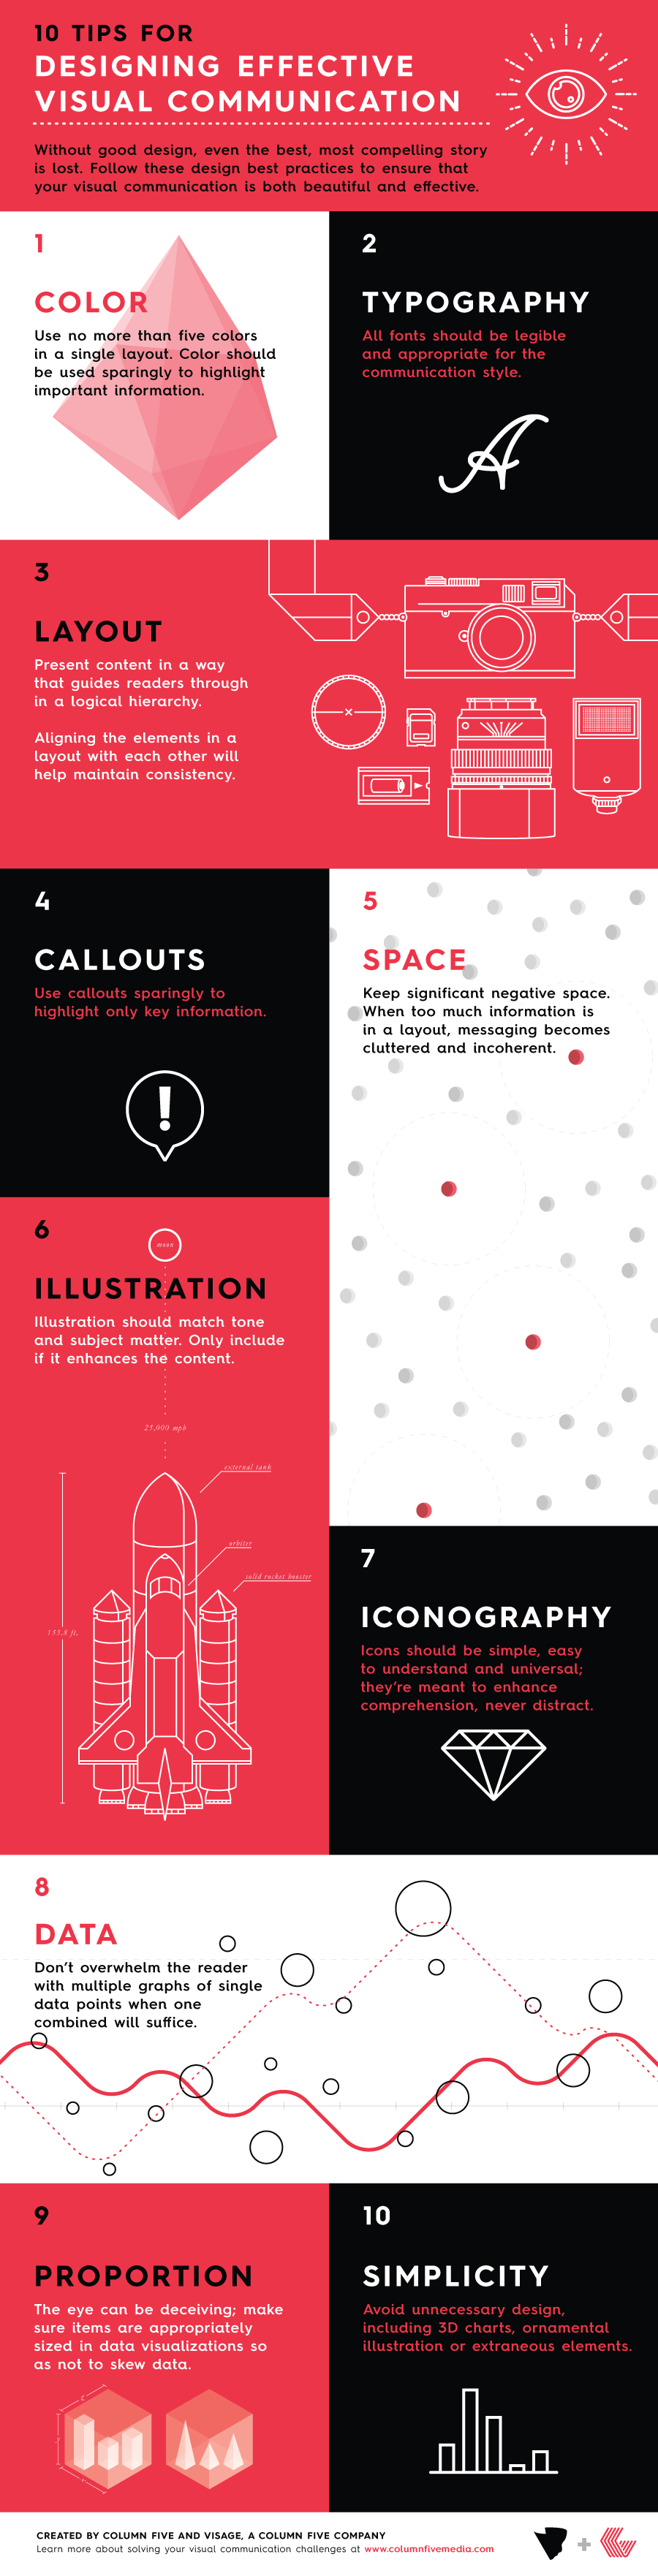 visuelle inhalte visuelle kommunikation infografik designtipps